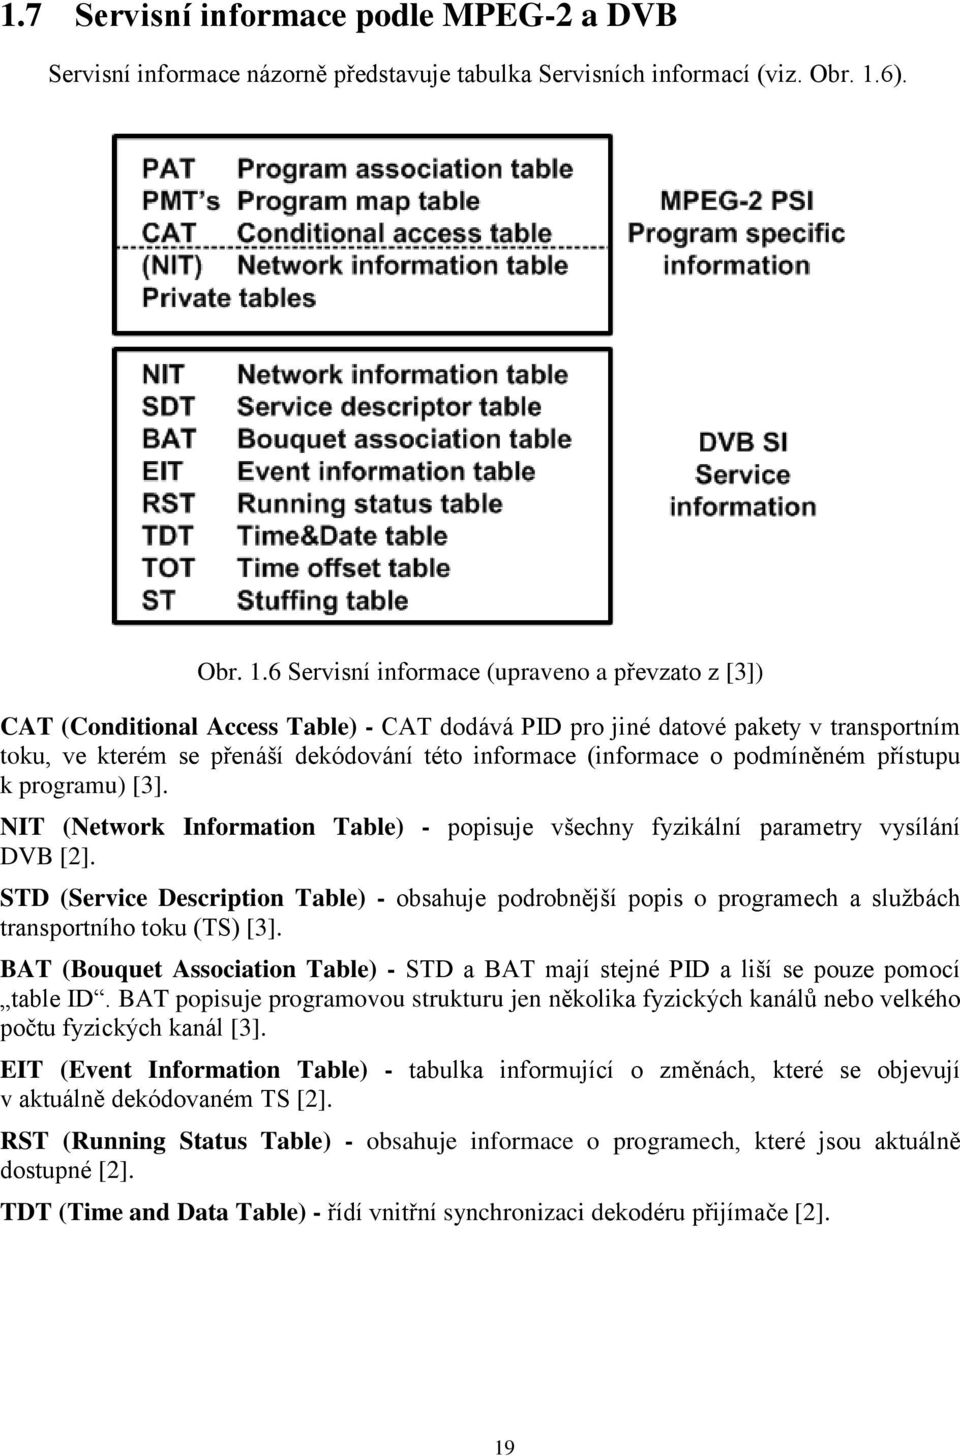 6 Servisní informace (upraveno a převzato z [3]) CAT (Conditional Access Table) - CAT dodává PID pro jiné datové pakety v transportním toku, ve kterém se přenáší dekódování této informace (informace